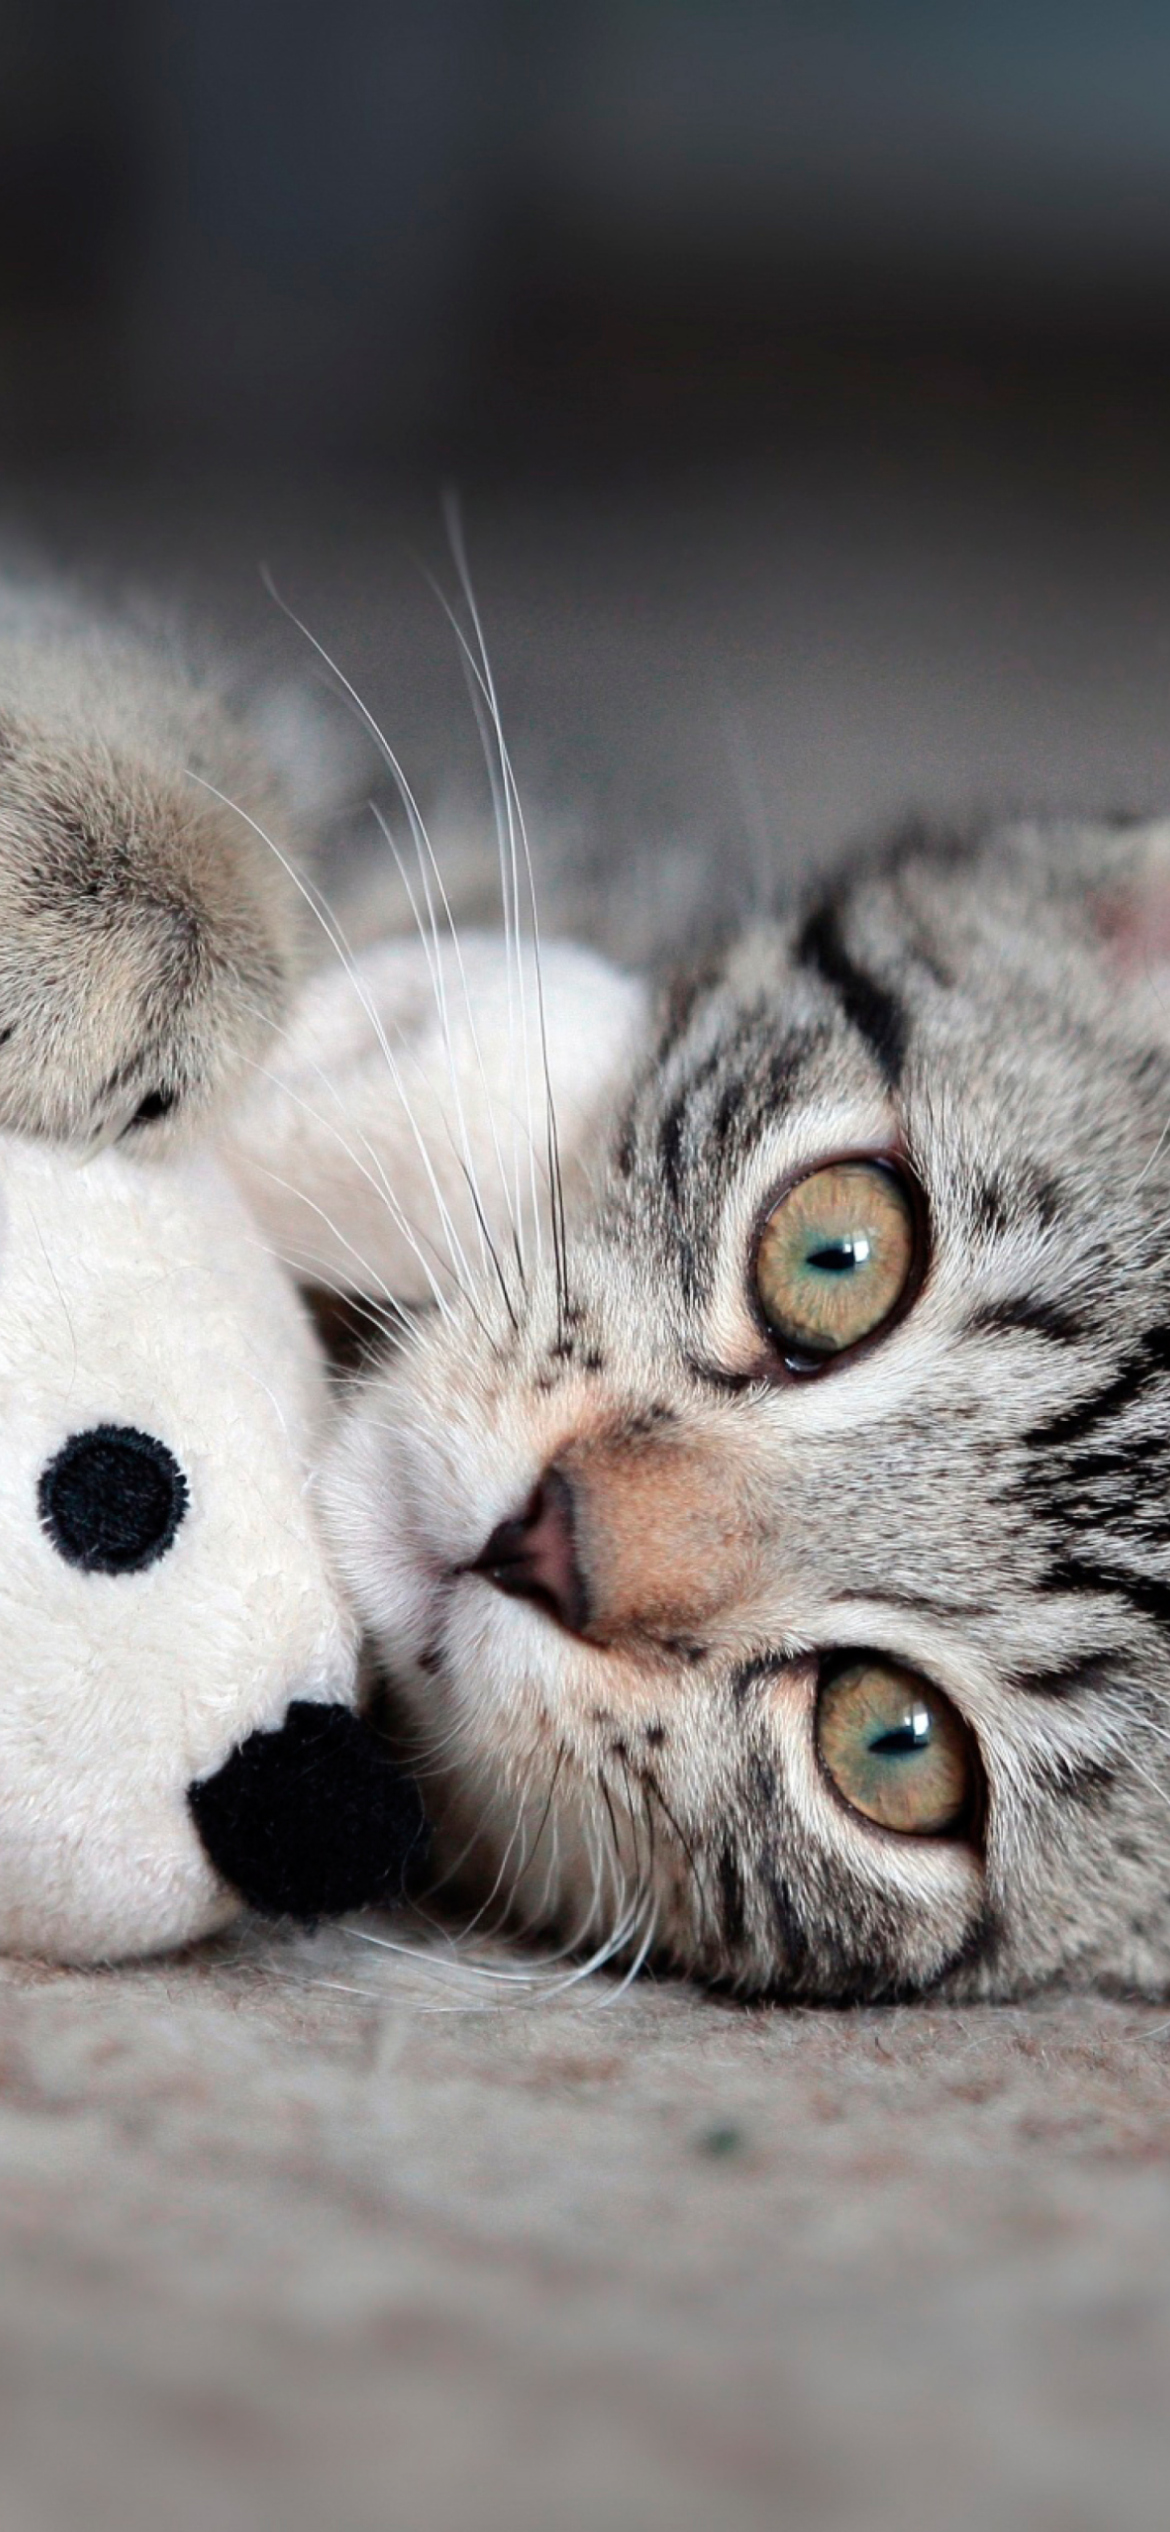 Fondo de pantalla Adorable Kitten With Toy Mouse 1170x2532